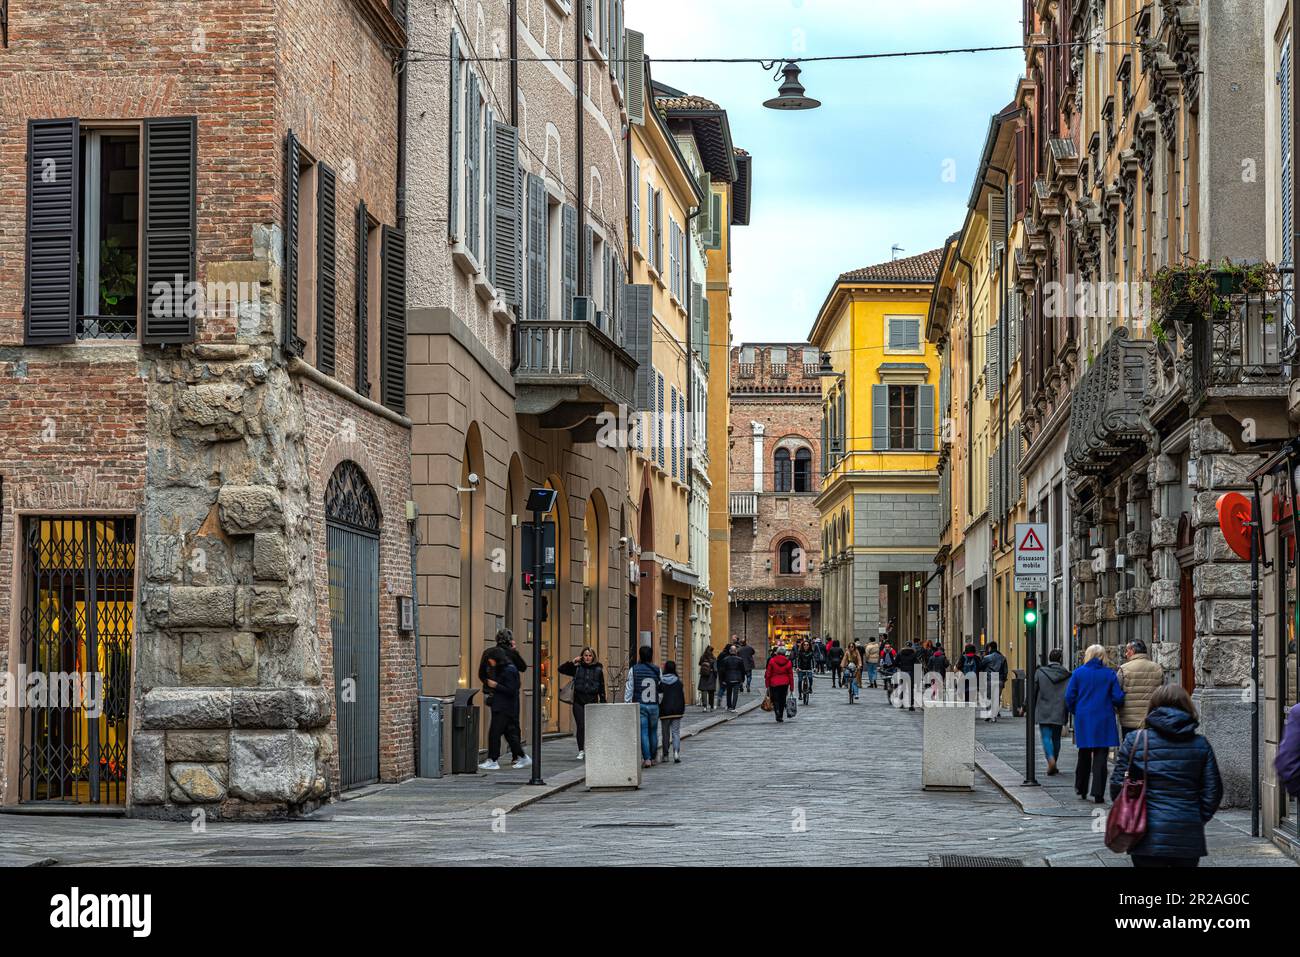 Vislumbre la Vía Emilia que cruza la ciudad entre palacios medievales y tiendas. Reggio Emilia, Emilia Romagna, Italia, Europa Foto de stock